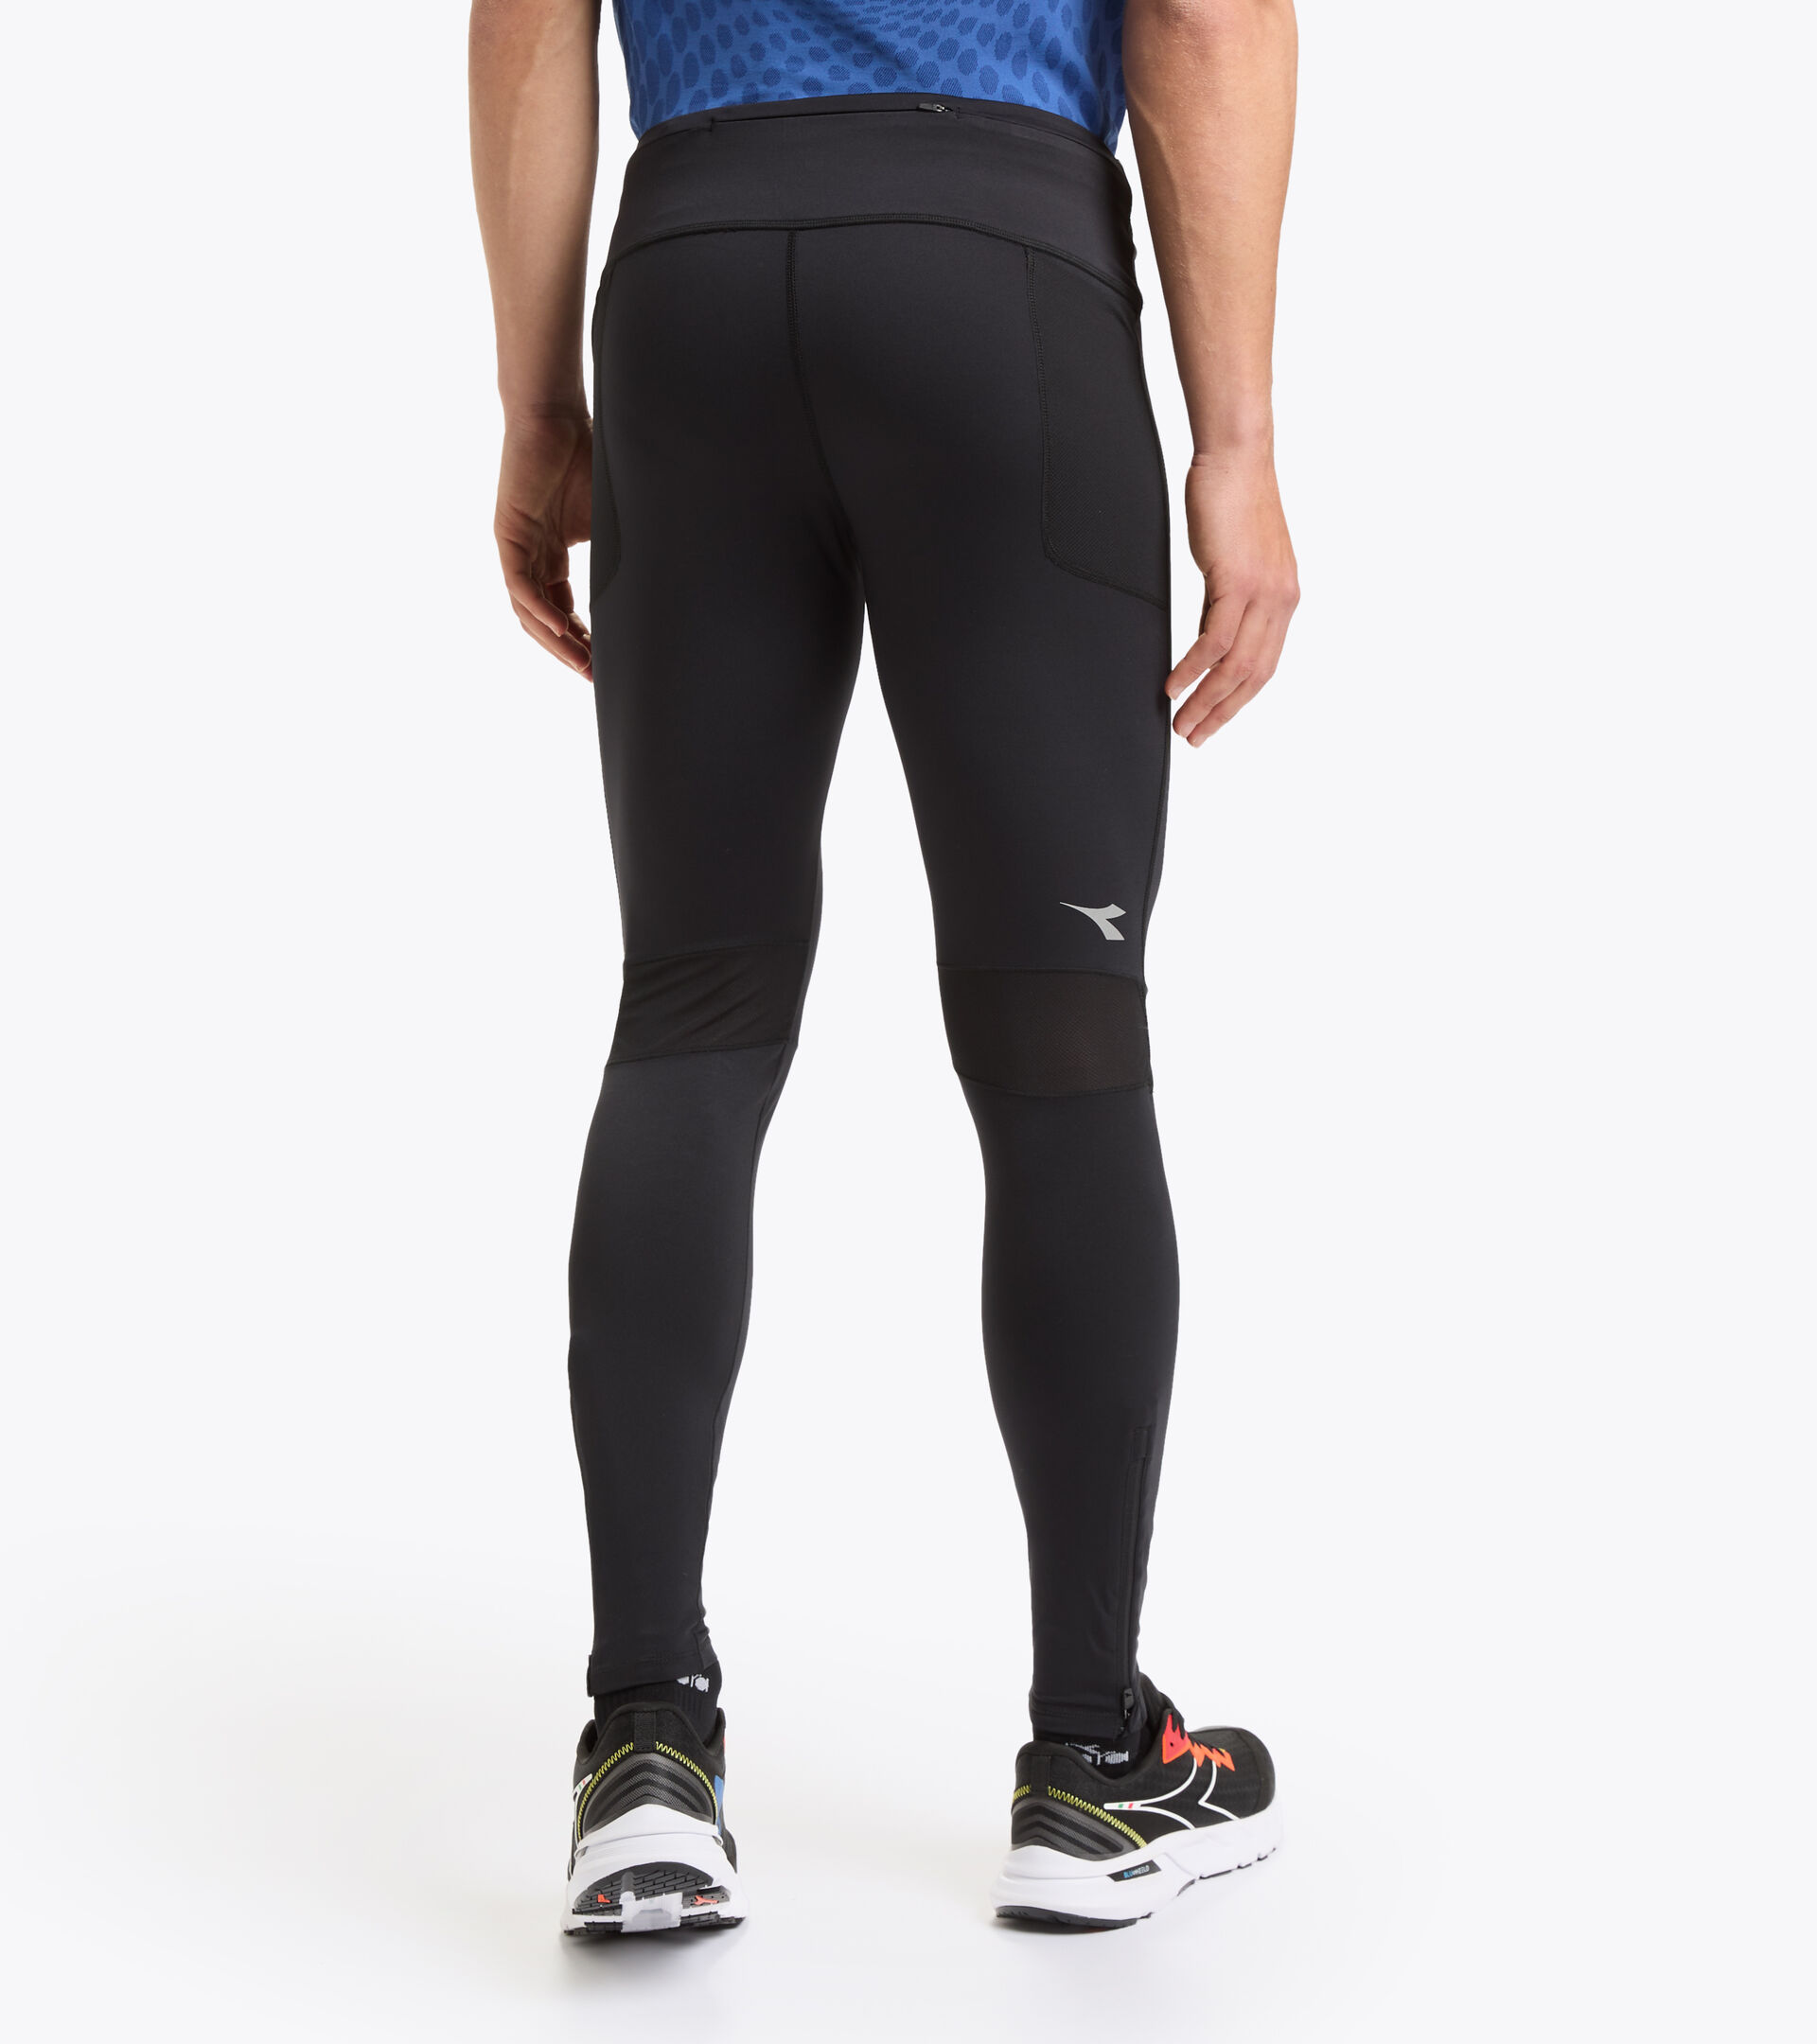 RUNNING TIGHTS Contoured running leggings - Men - Diadora Online